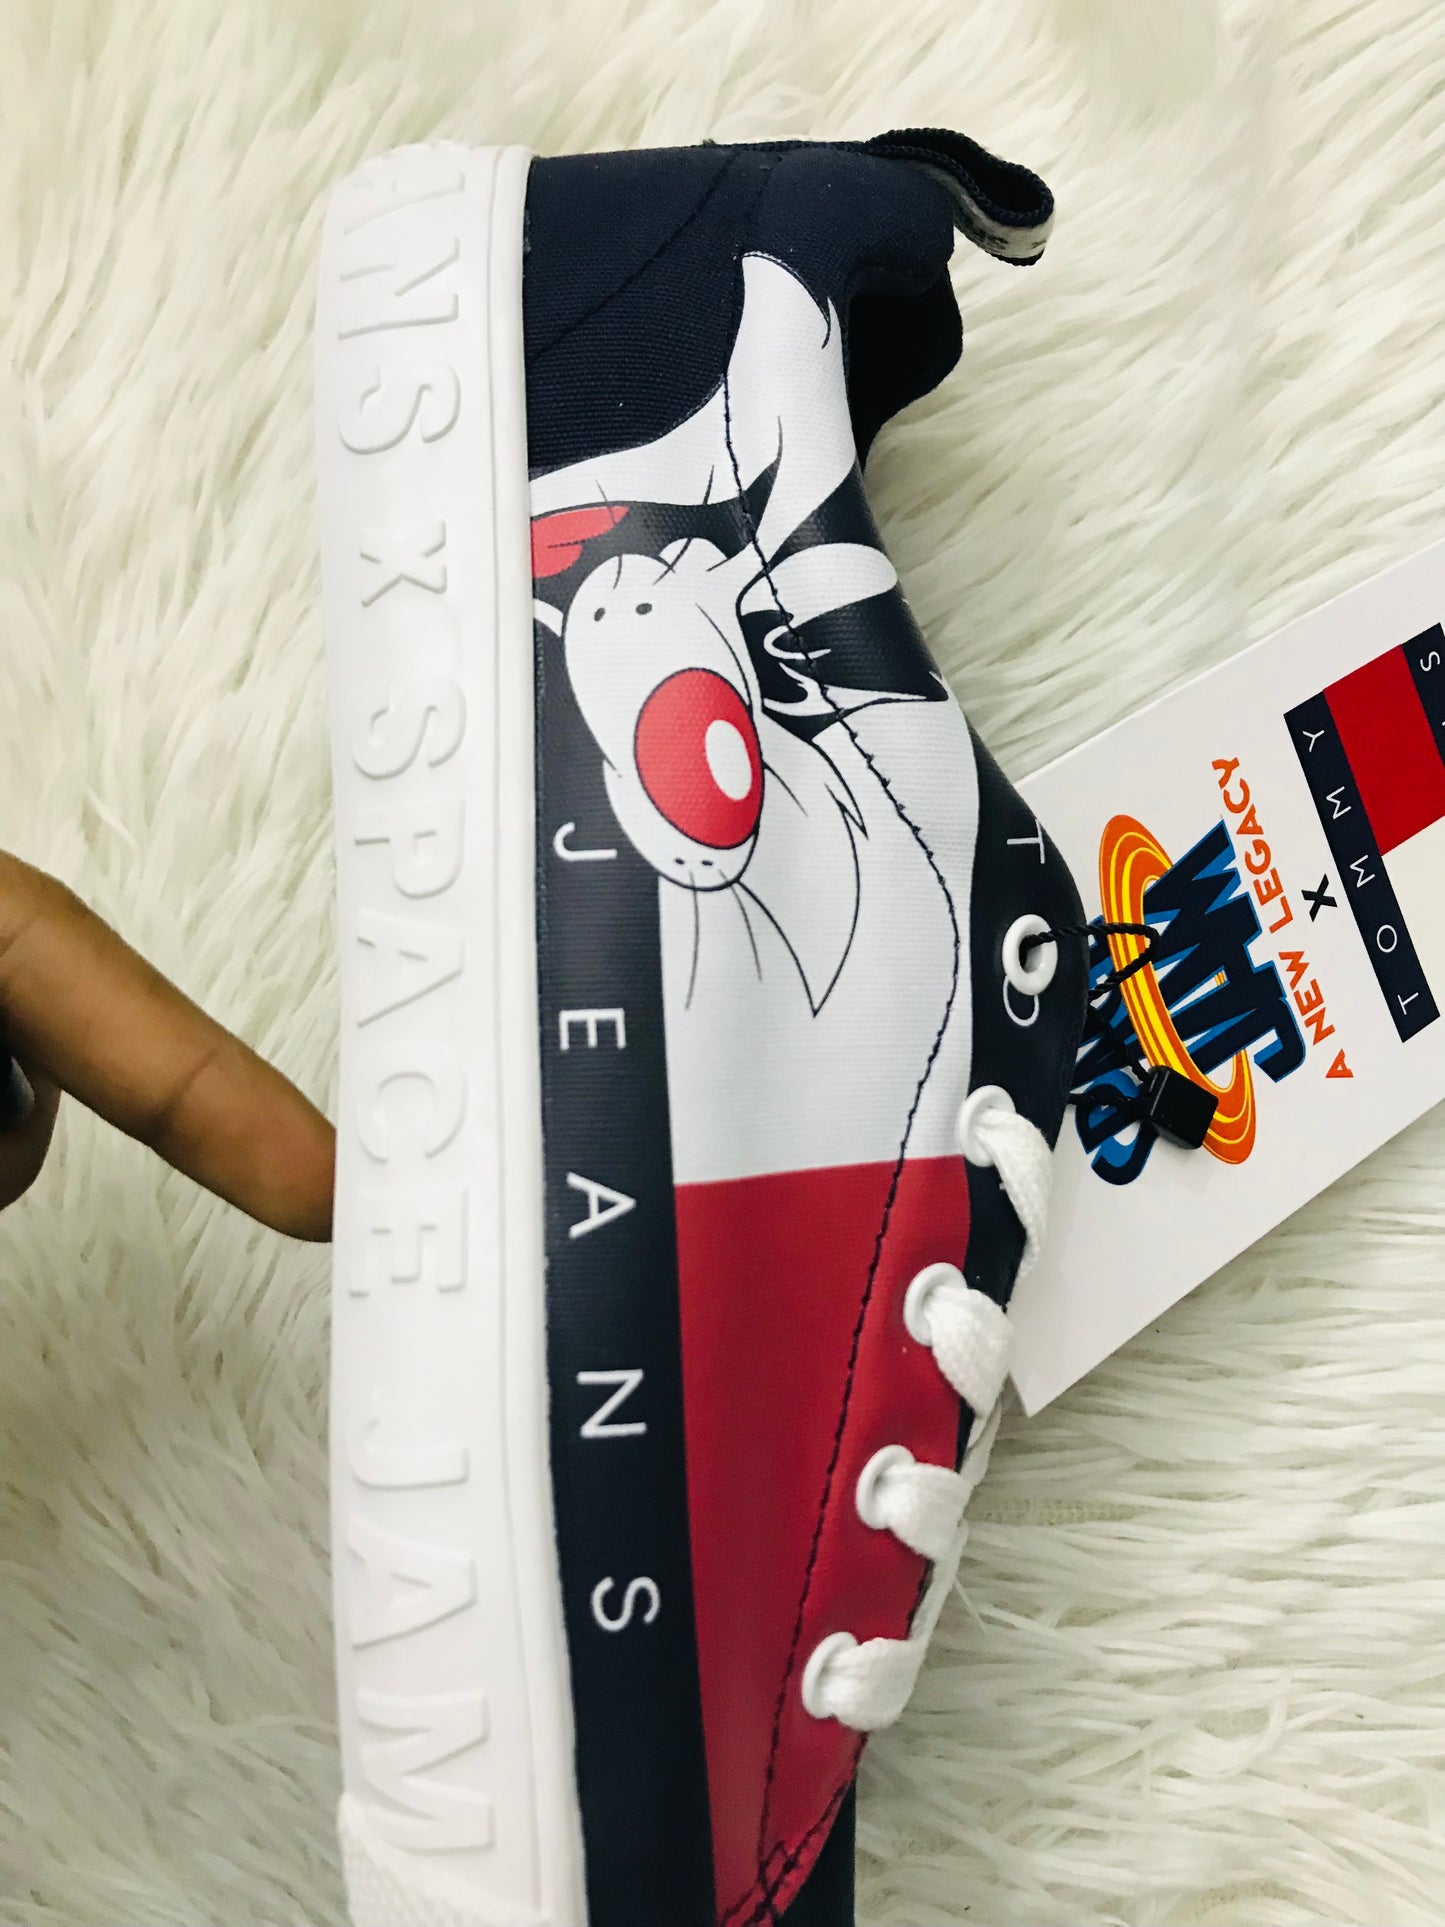 Tenis Tommy Hilfiger original, edición SPACE JAM A NEW LEGACY, azul marino con cordones blancos y caricatura de la película de Piolin, en color blanco, rojo y negro, letras TOMMY JEAN en color blanco en un lado.